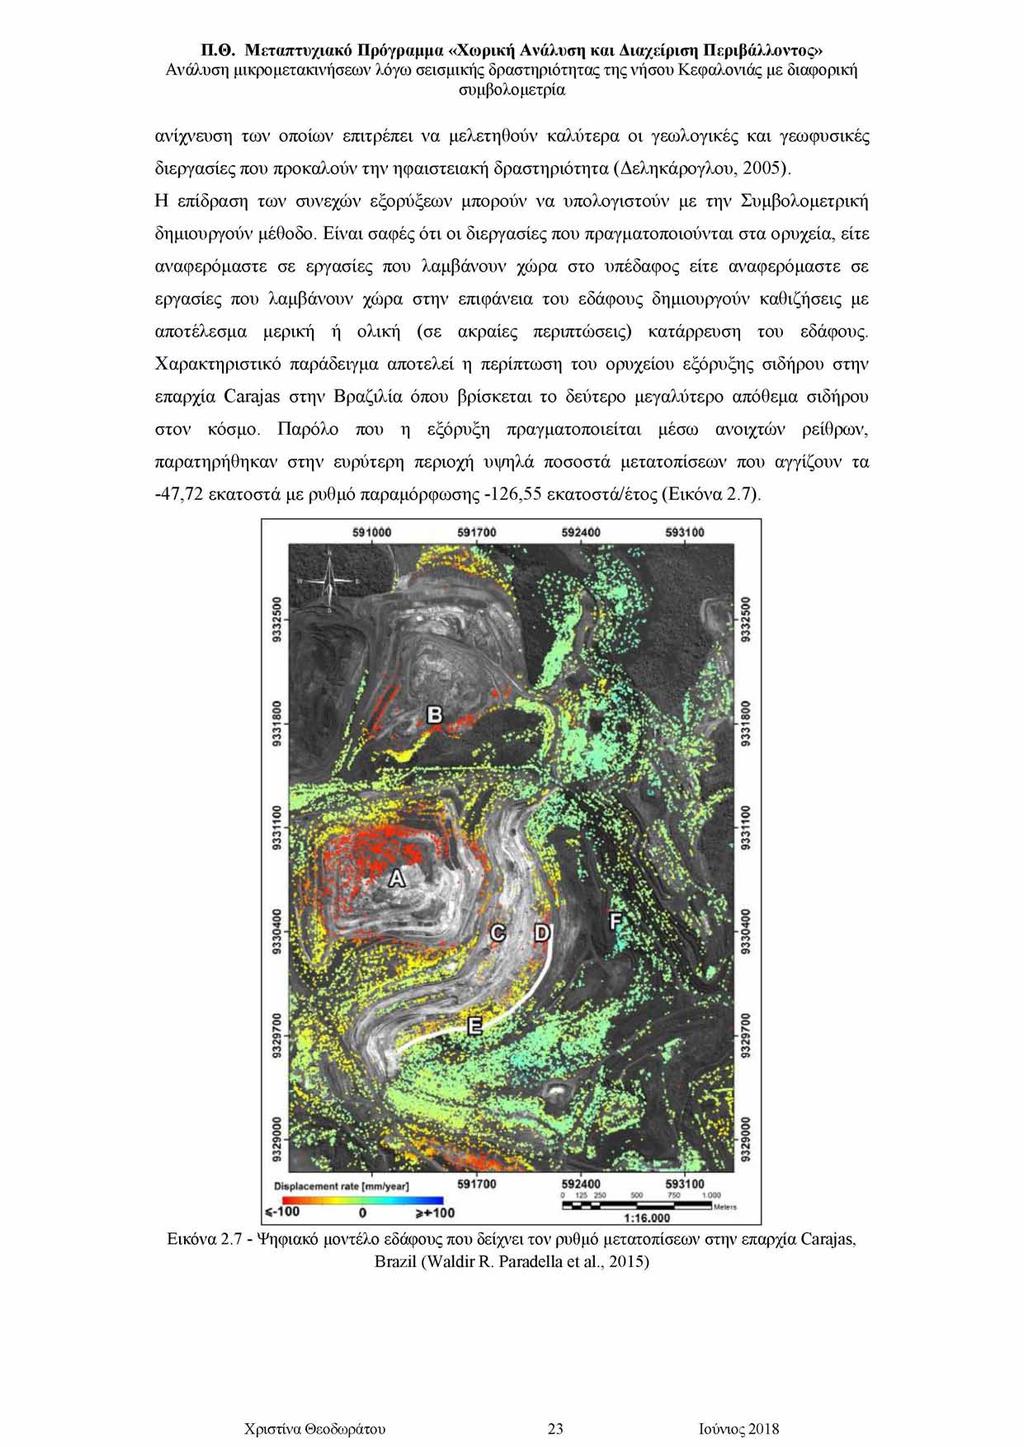 ανίχνευση των οποίων επιτρέπει να μελετηθούν καλύτερα οι γεωλογικές και γεωφυσικές διεργασίες που προκαλούν την ηφαιστειακή δραστηριότητα (Δεληκάρογλου, 2005).